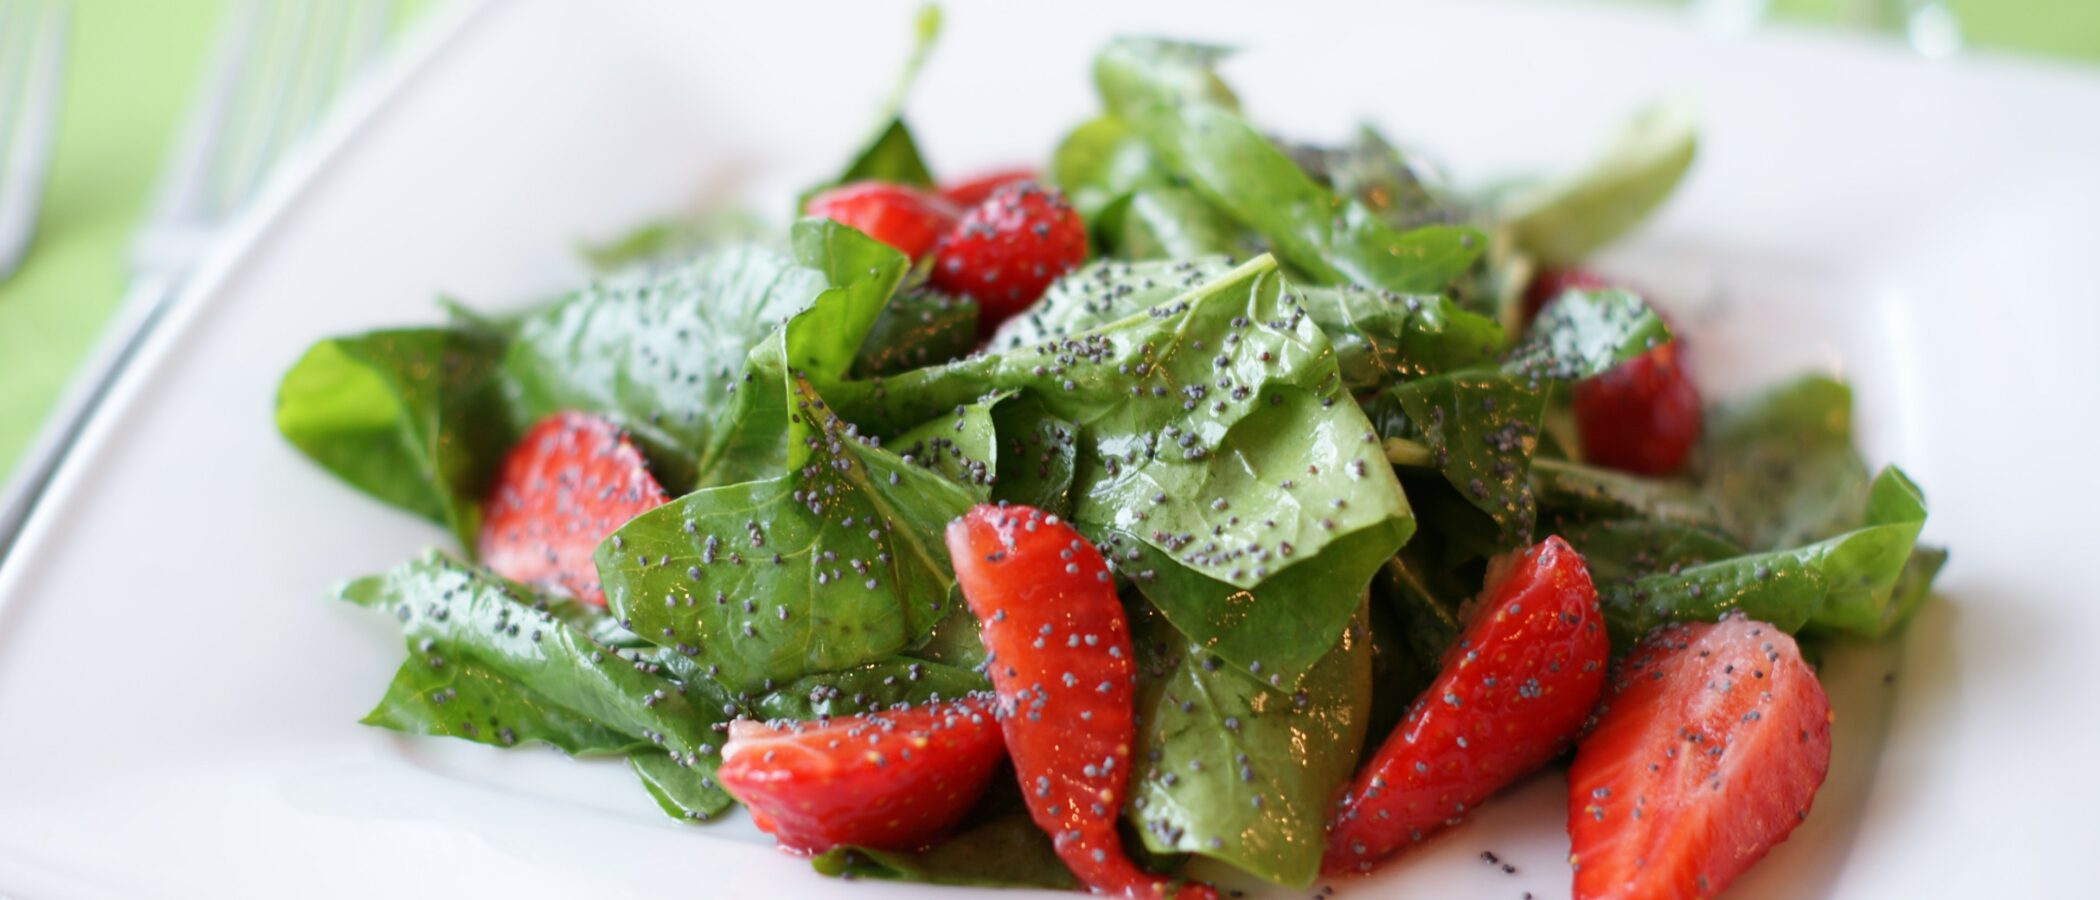 Food Pairing - Spinat mit Erdbeeren und Chia-Samen